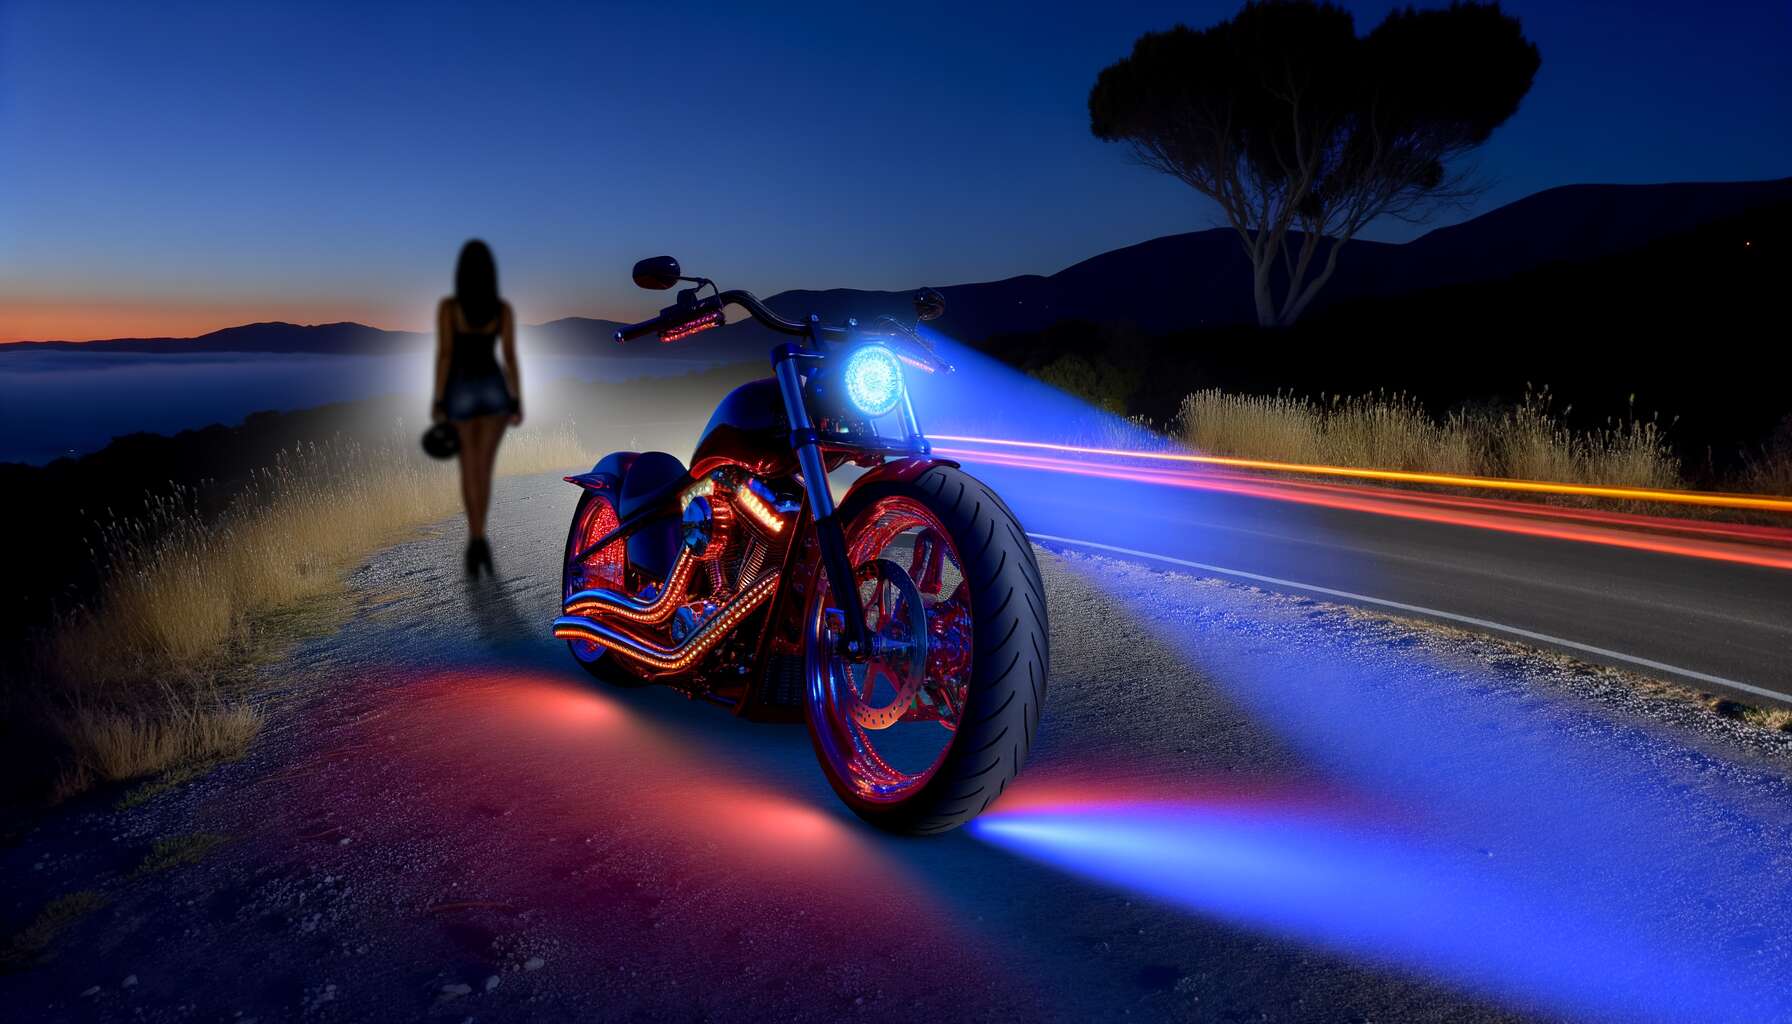 Personnalisation de moto : quels dispositifs lumineux sont permis ?